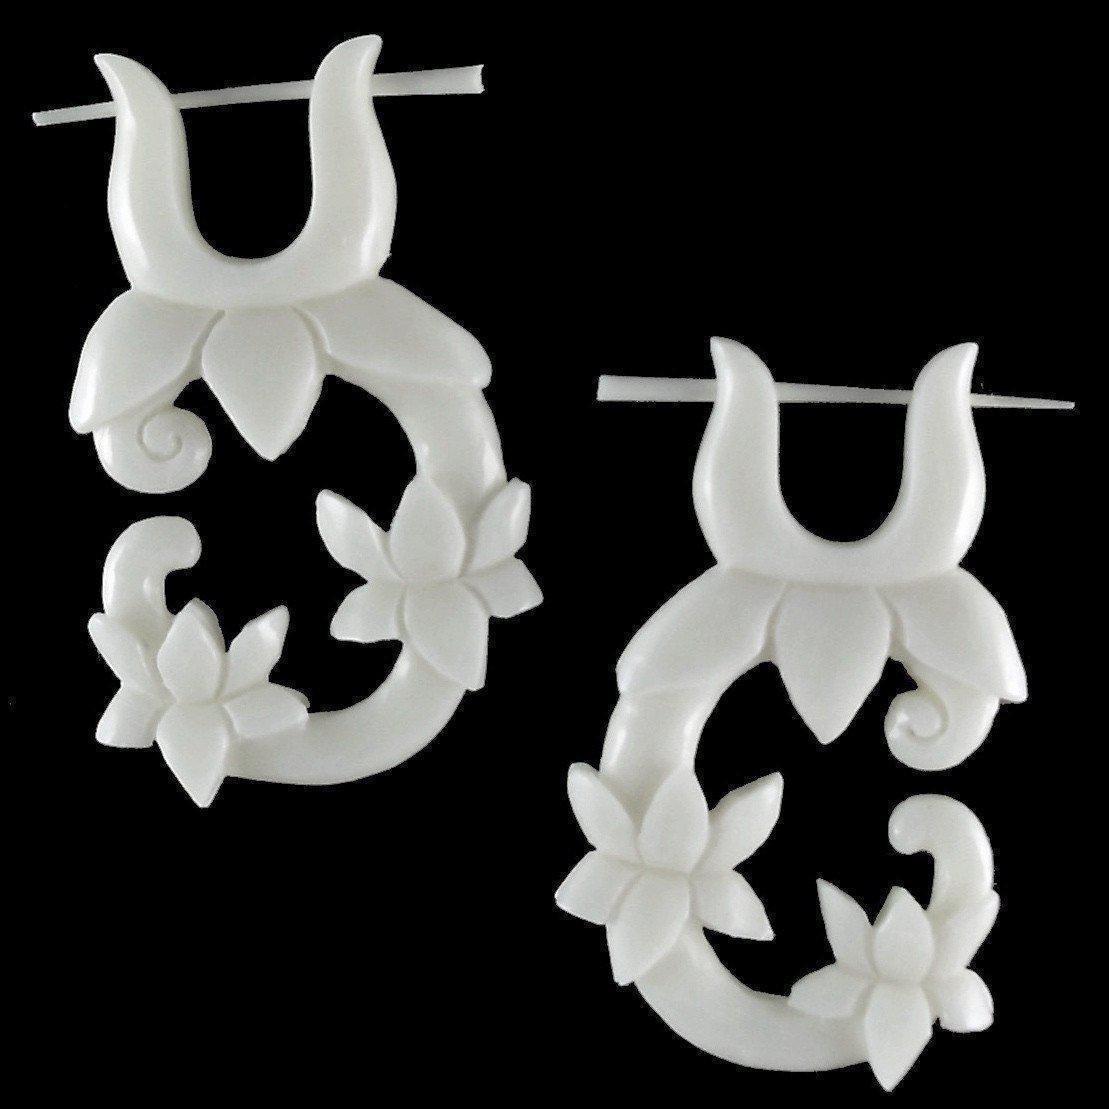 Natural Jewelry :|: Lotus Vine. Bone Earrings, 1 inch W x 1 3/4 inch L. | Tribal Earrings